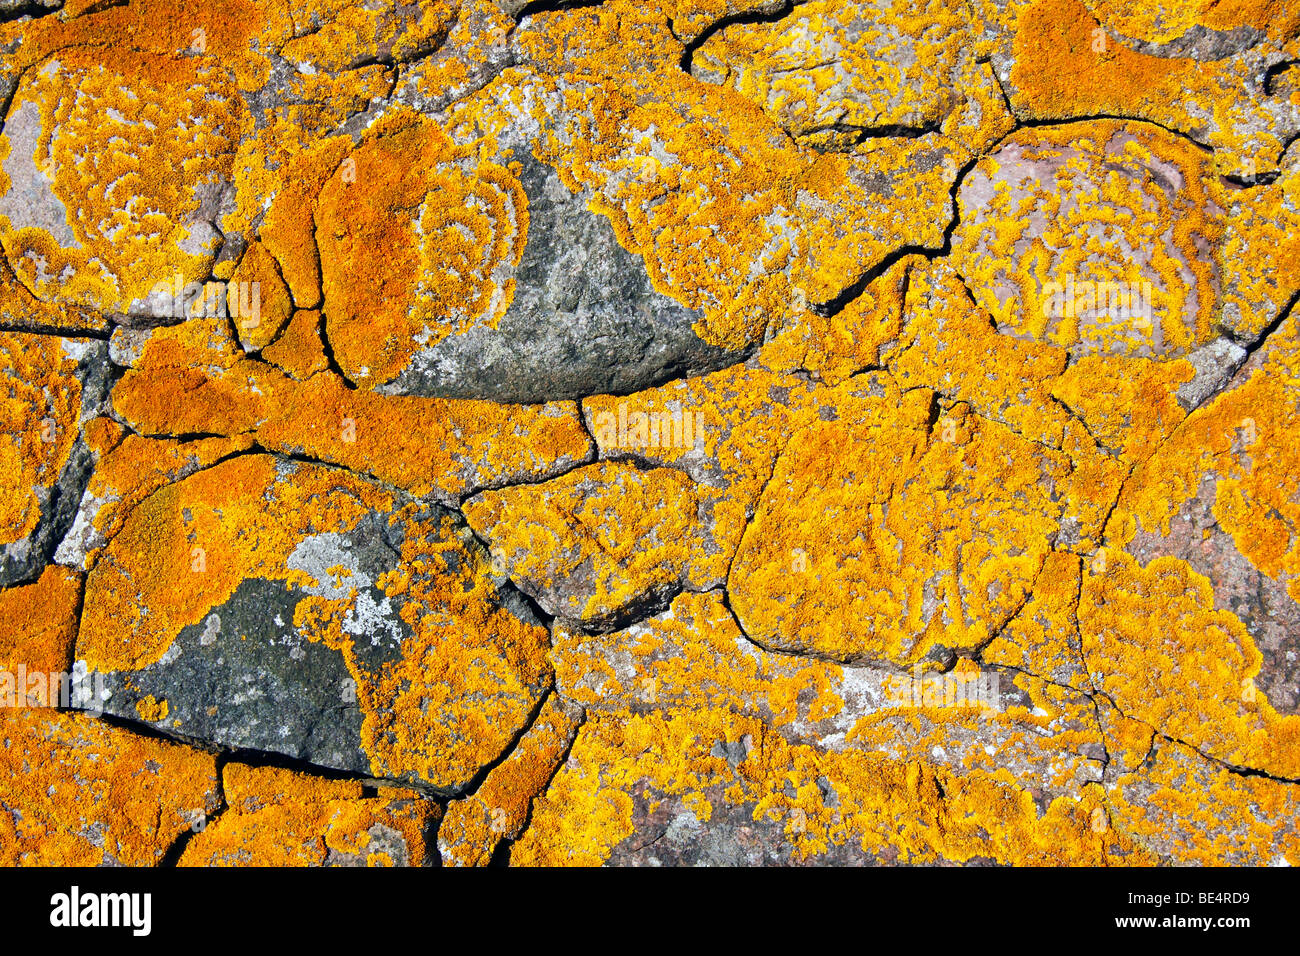 Common Orange Lichen, Yellow Lichen, Maritime Sunburst Lichen (Xanthoria parietina) growing on an old stone wall, foliose lichen Stock Photo